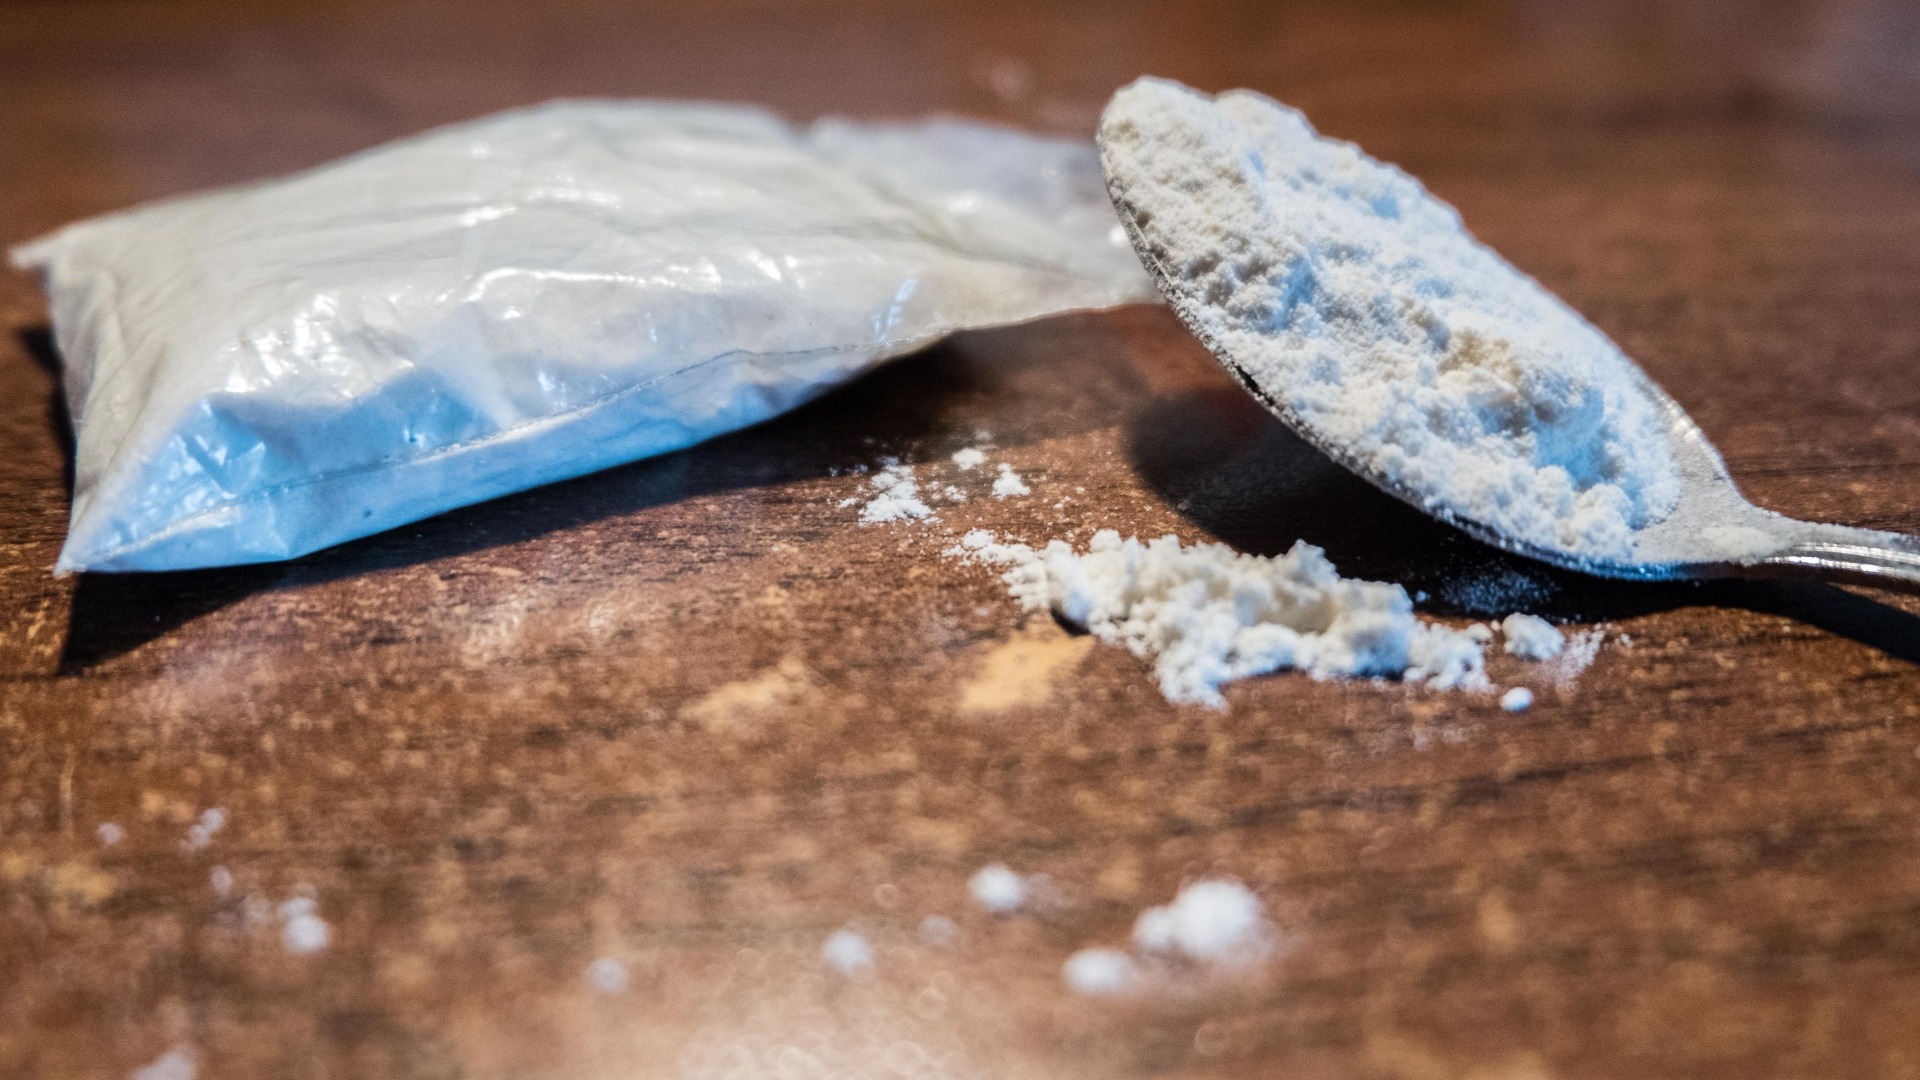 «Химик» из Екатеринбурга произвёл более 27,5 кг наркотиков для продажи